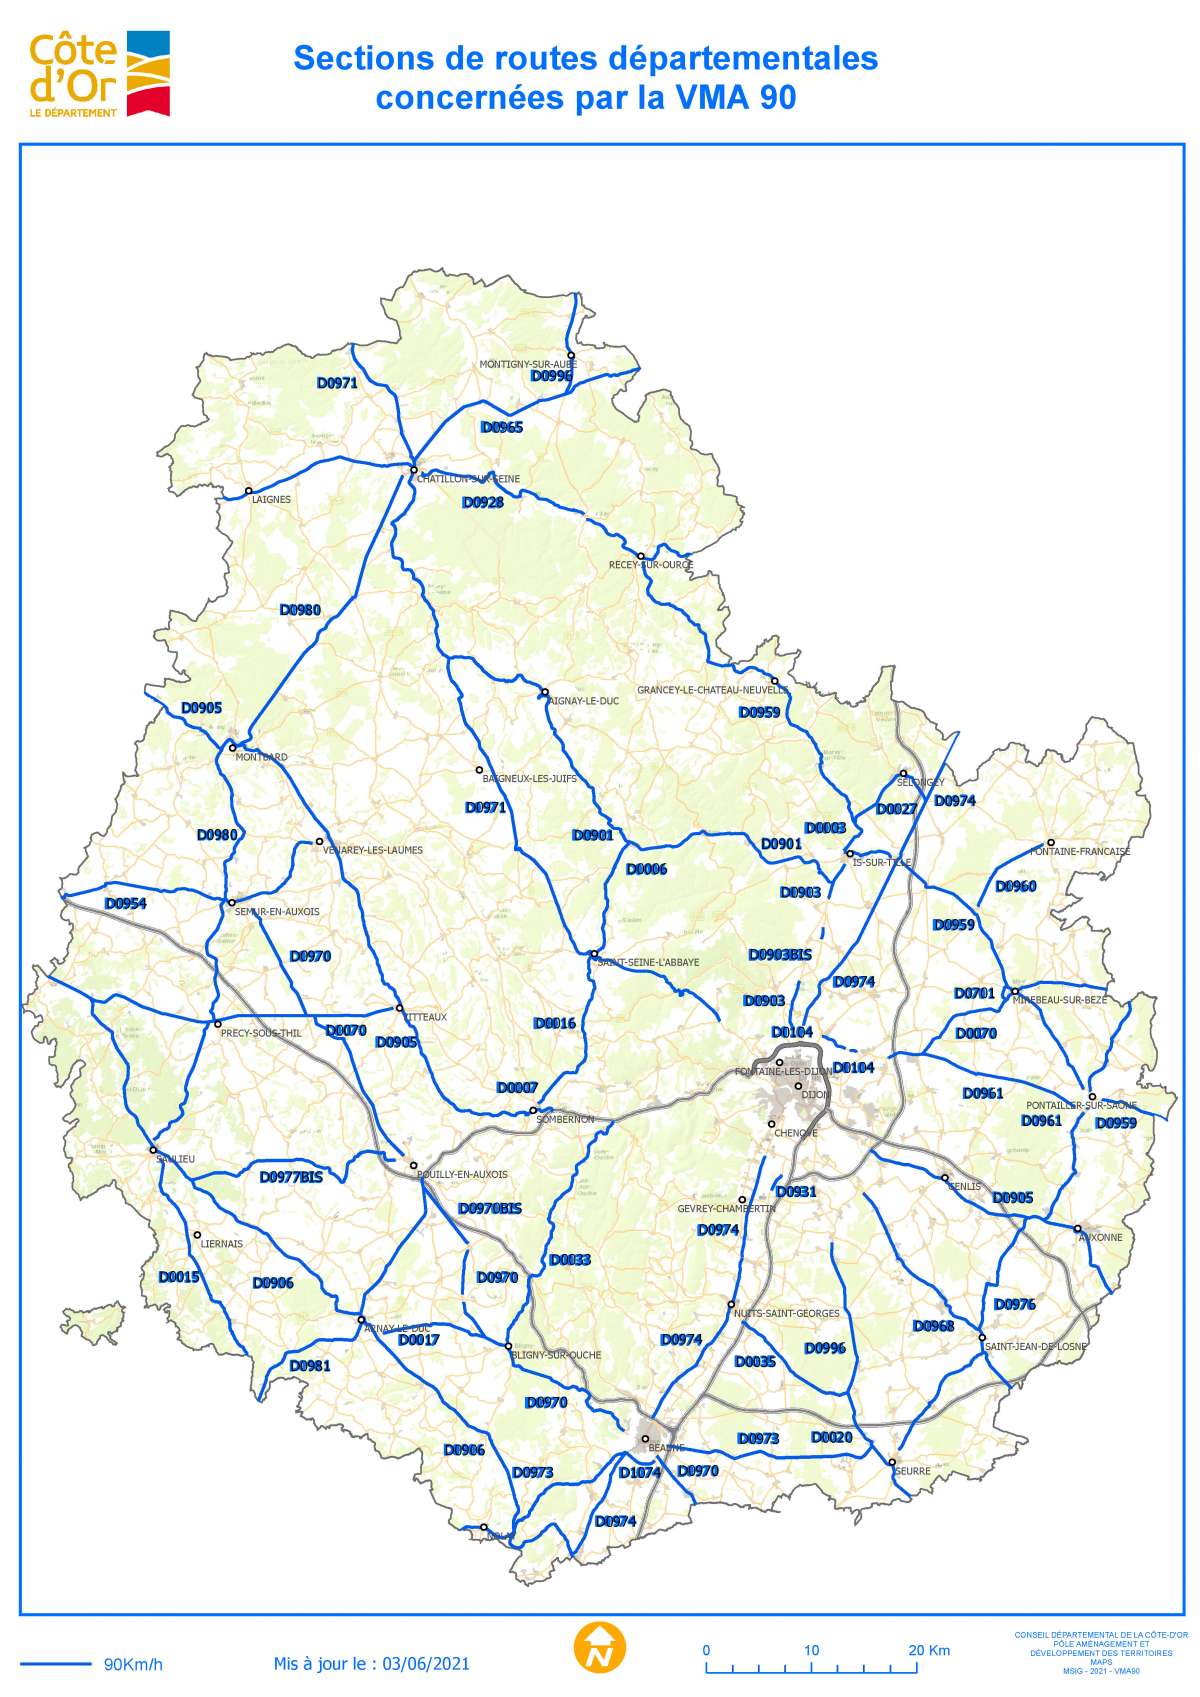 Sections des routes départementales à 90 km-h